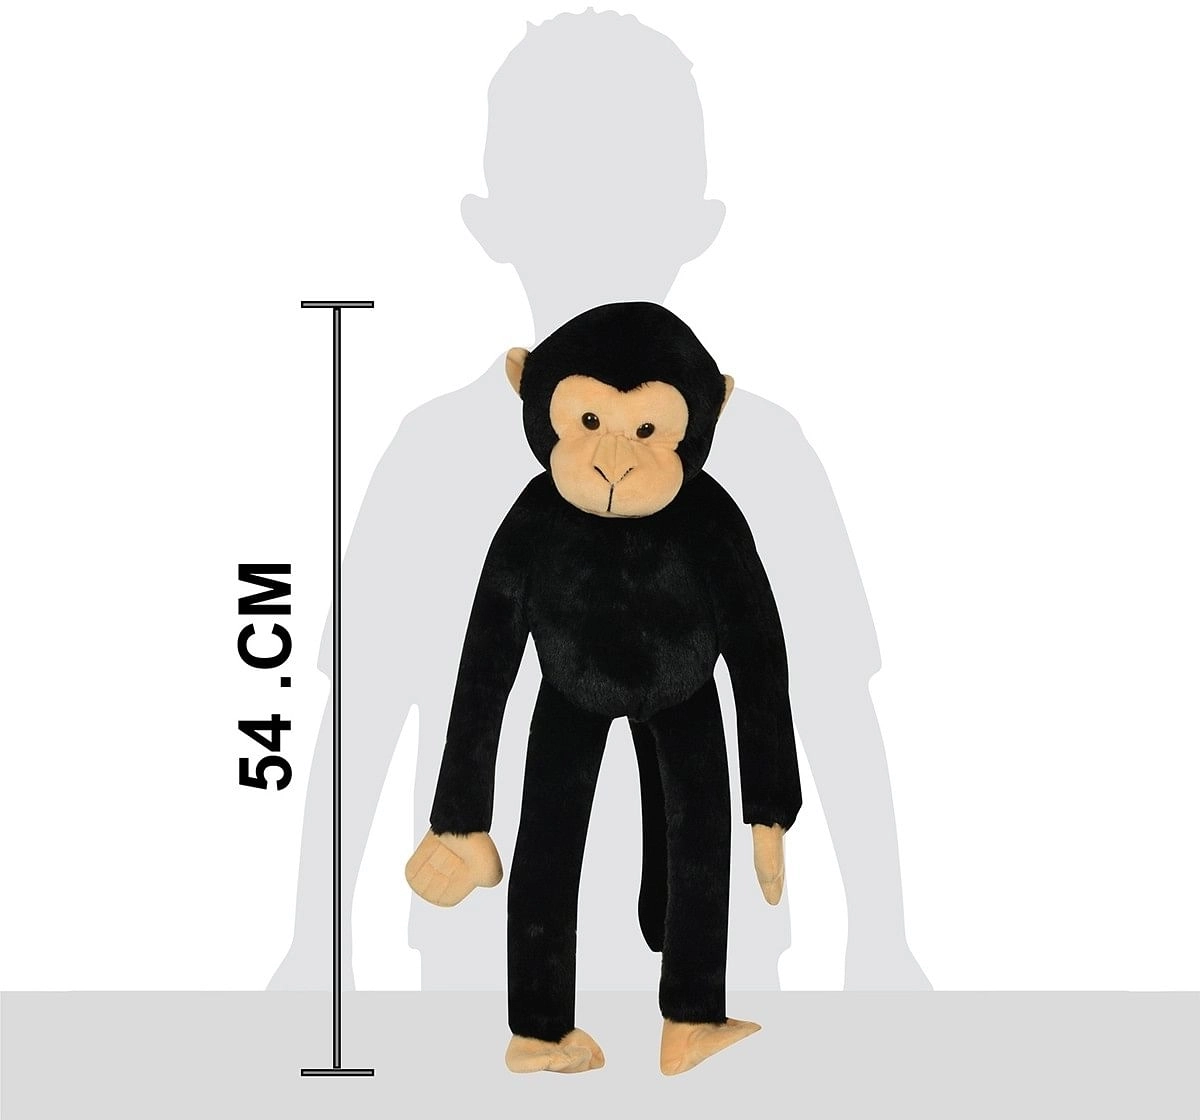 Mirada 52cm hanging monkey soft toy Multicolor 3Y+